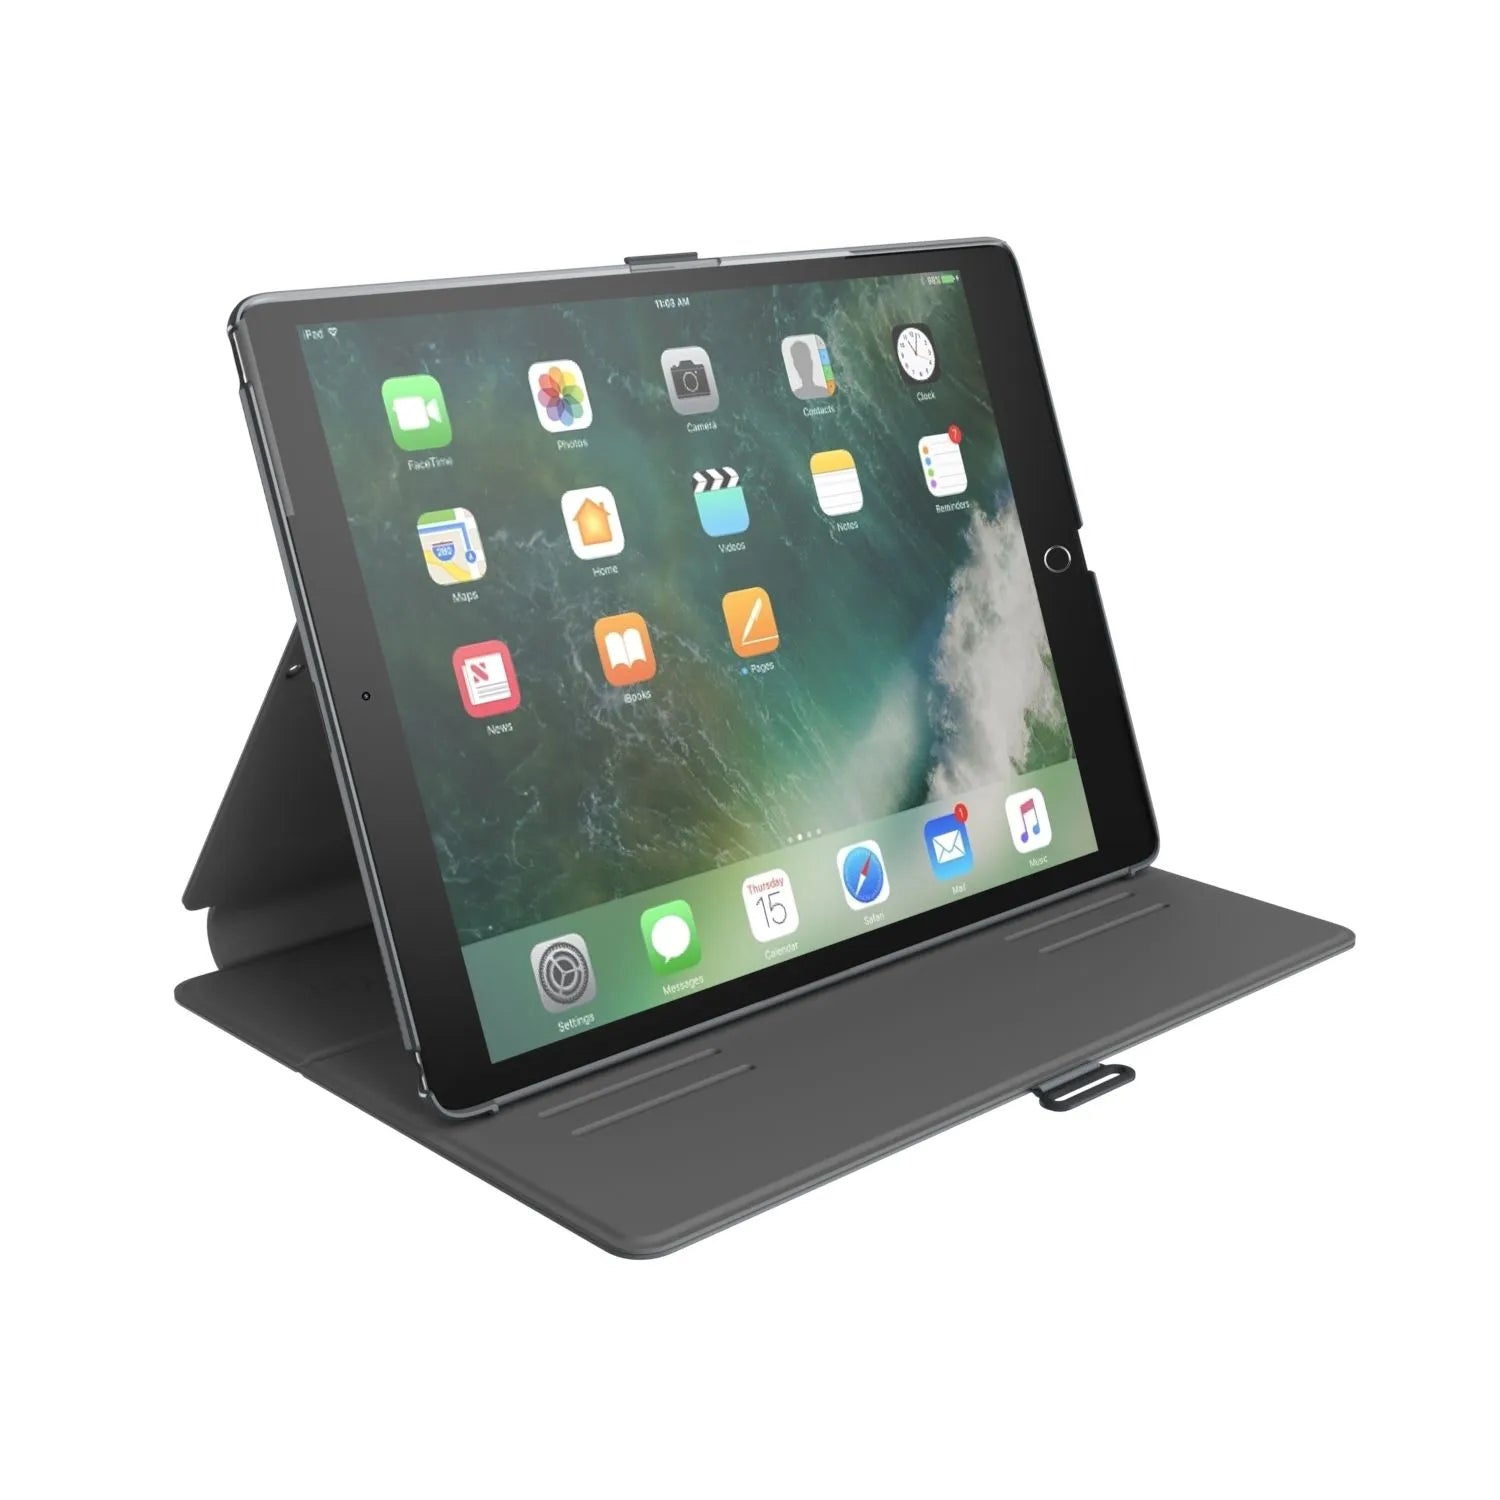 SPECK Balance FOLIO for 10.5" iPad Pro - Stormy - Stormy Grey / Charcoal Grey